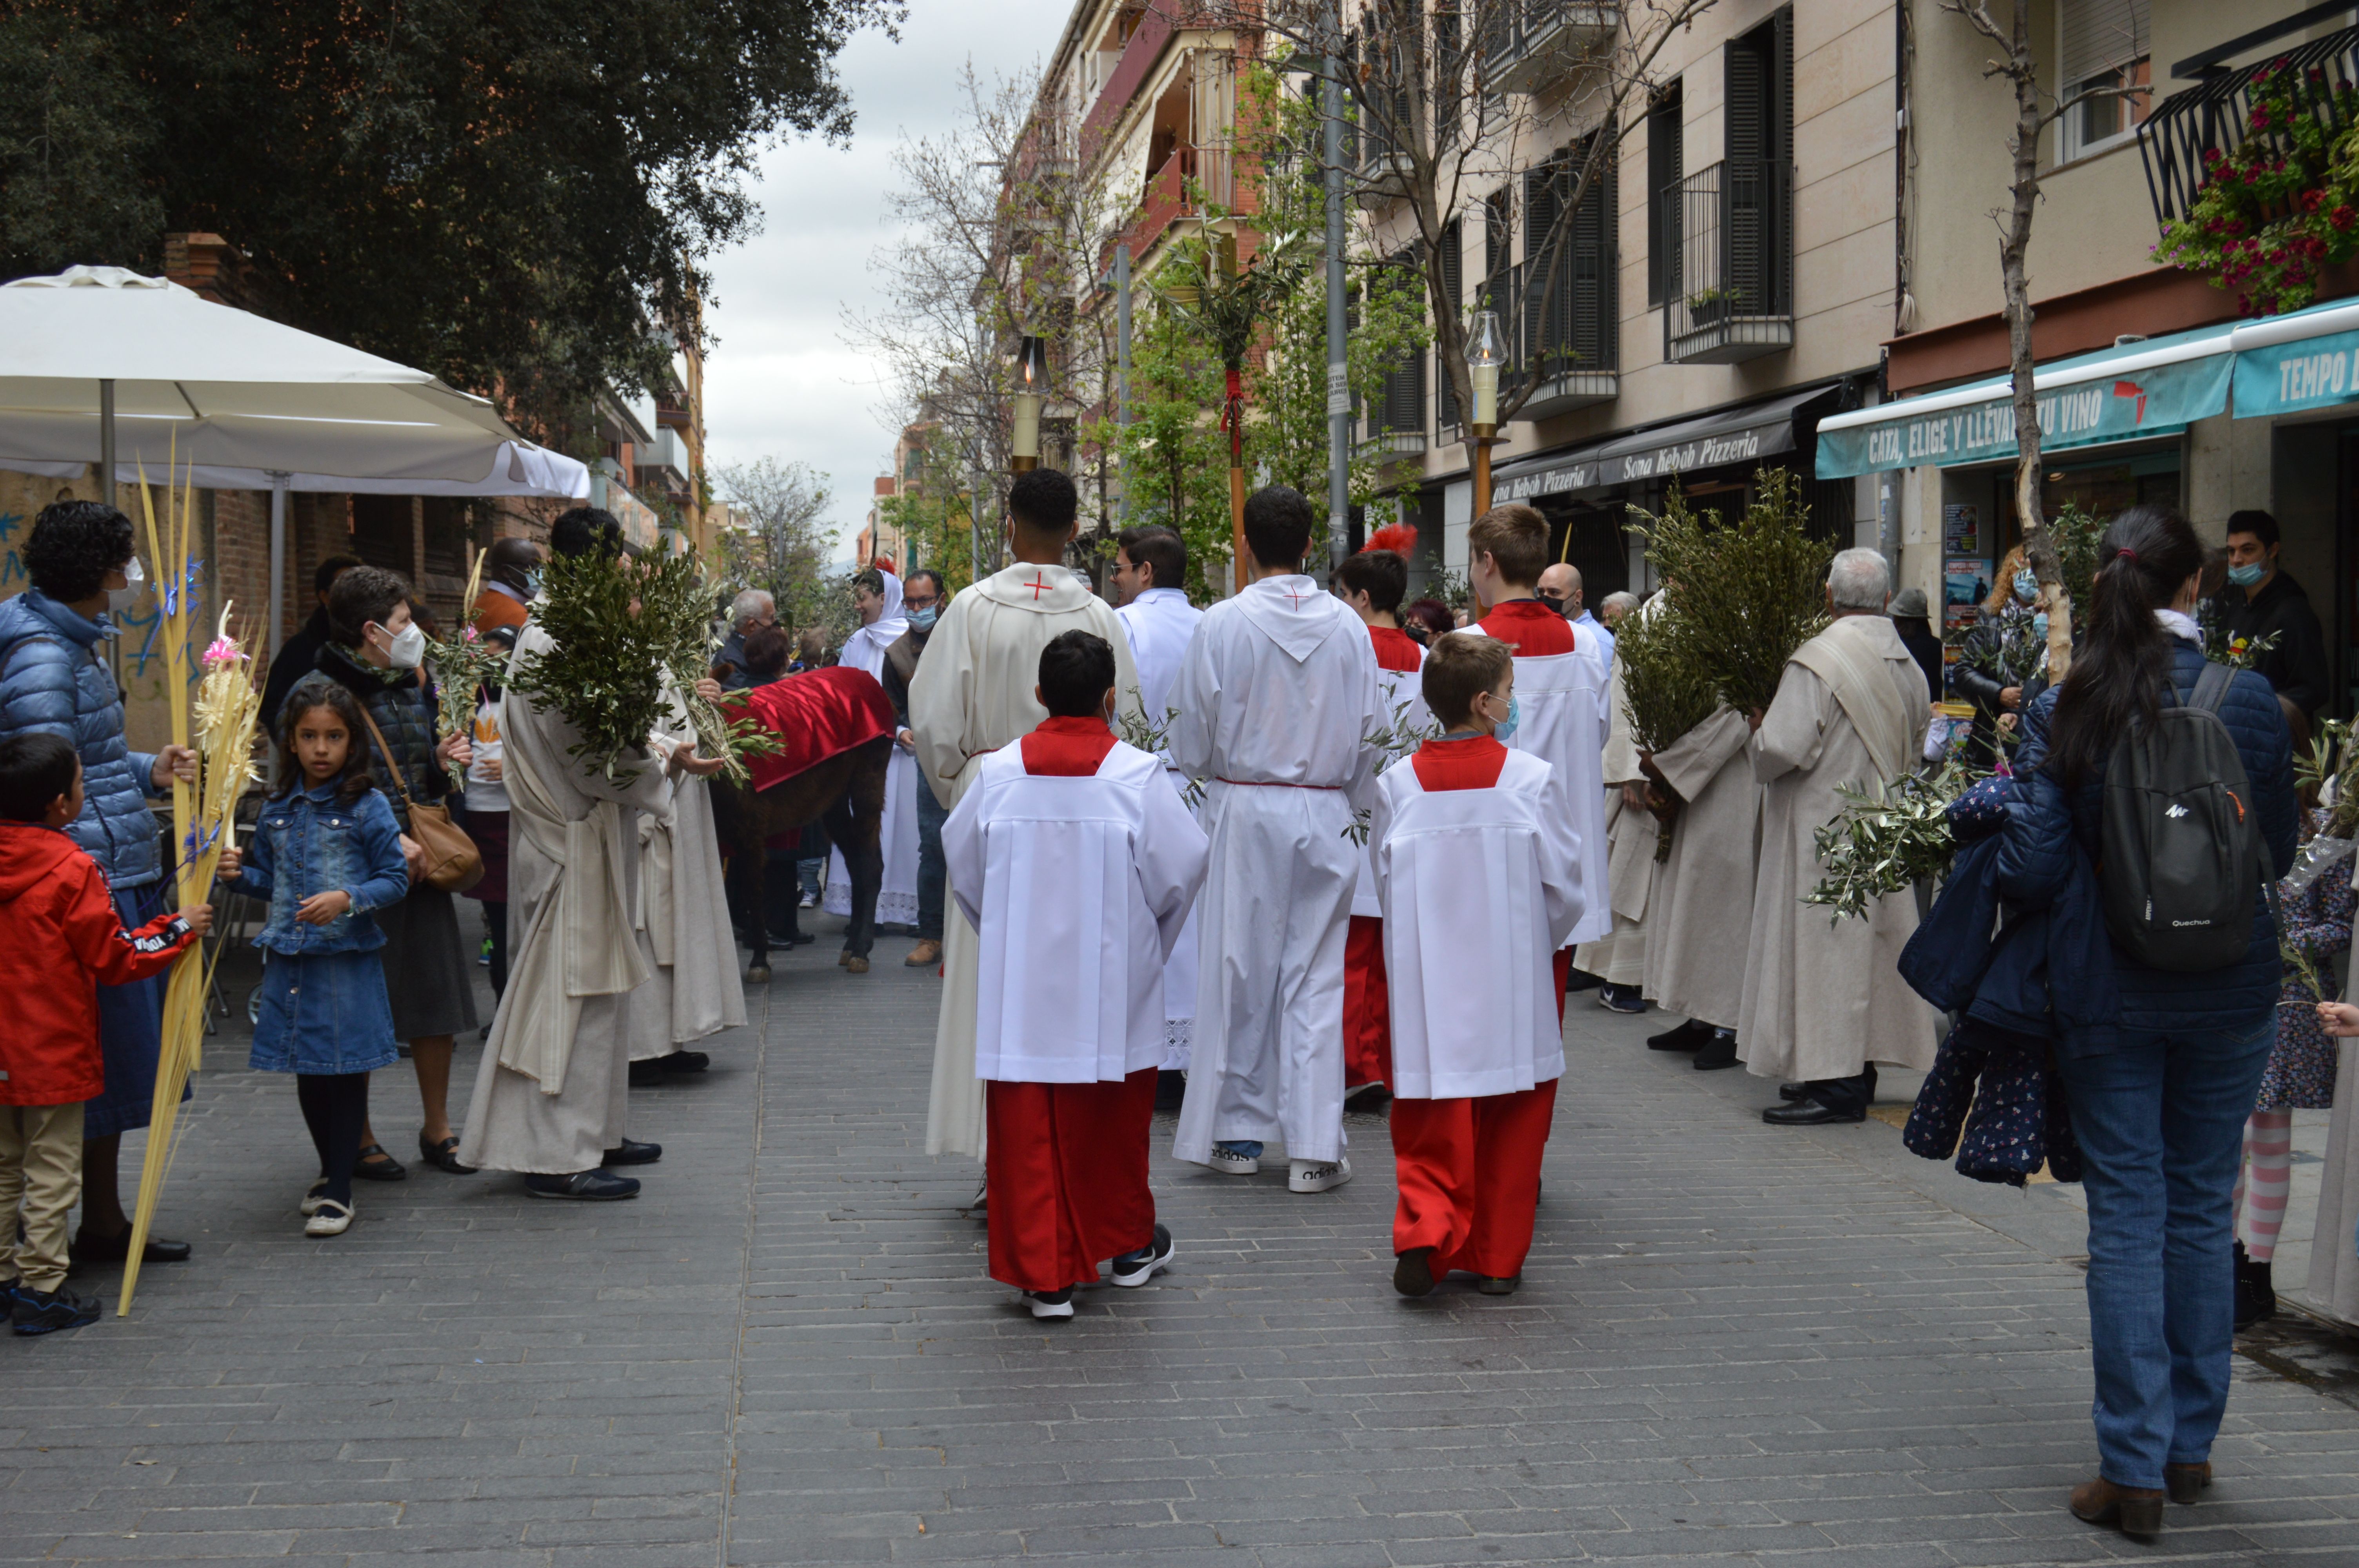 Processó i benedicció de rams en el diumenge de rams de Setmana Santa. FOTO: Nora Muñoz Otero